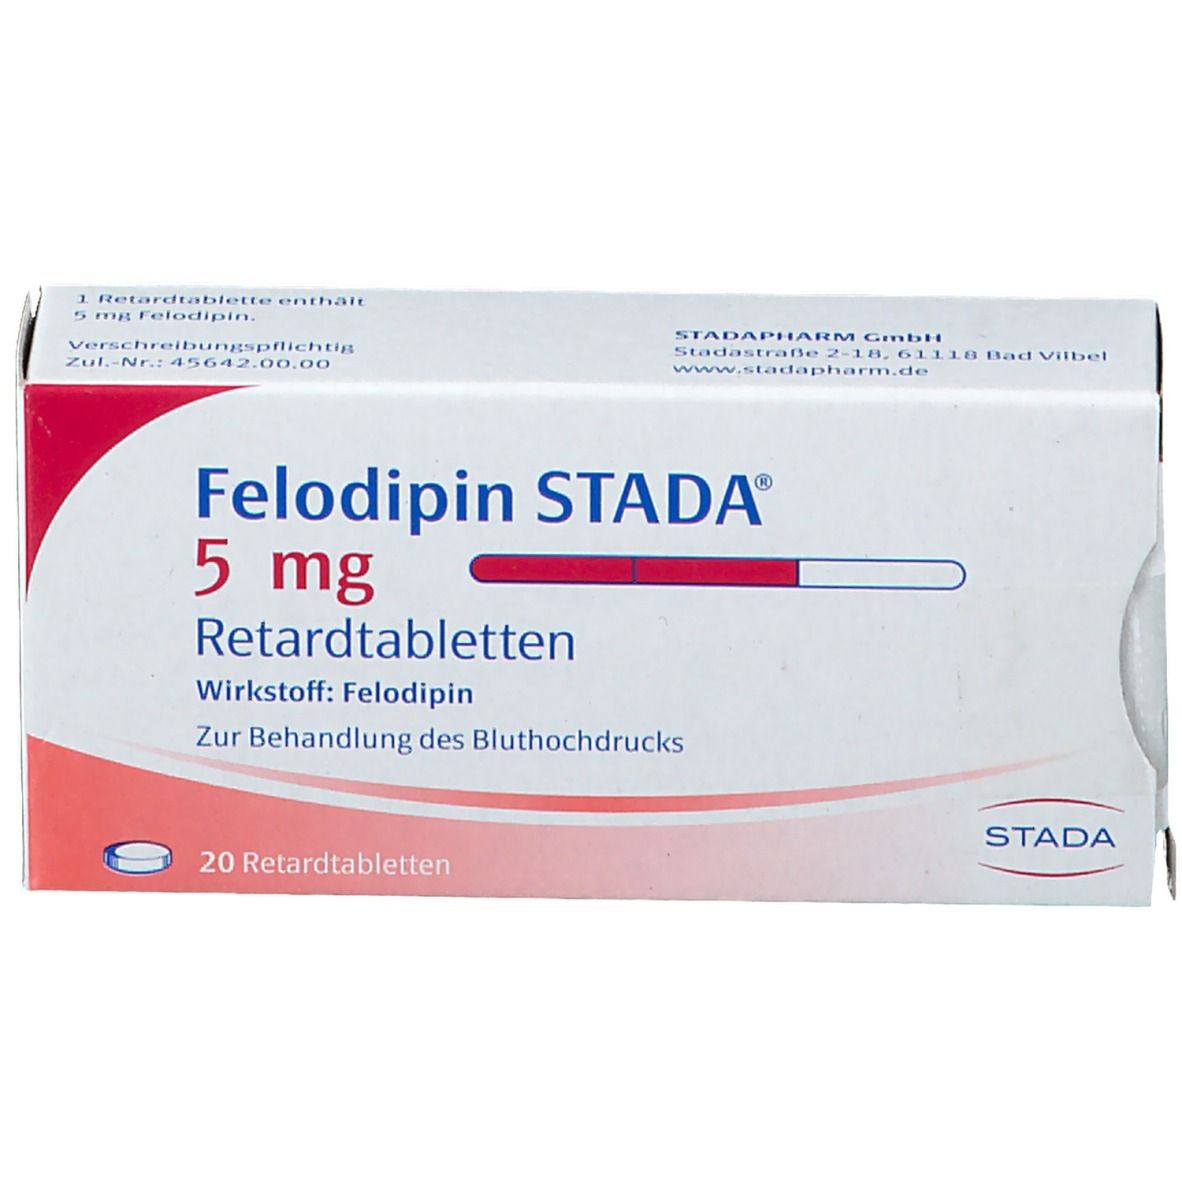 Felodipin STADA® 5 mg Retardtabletten